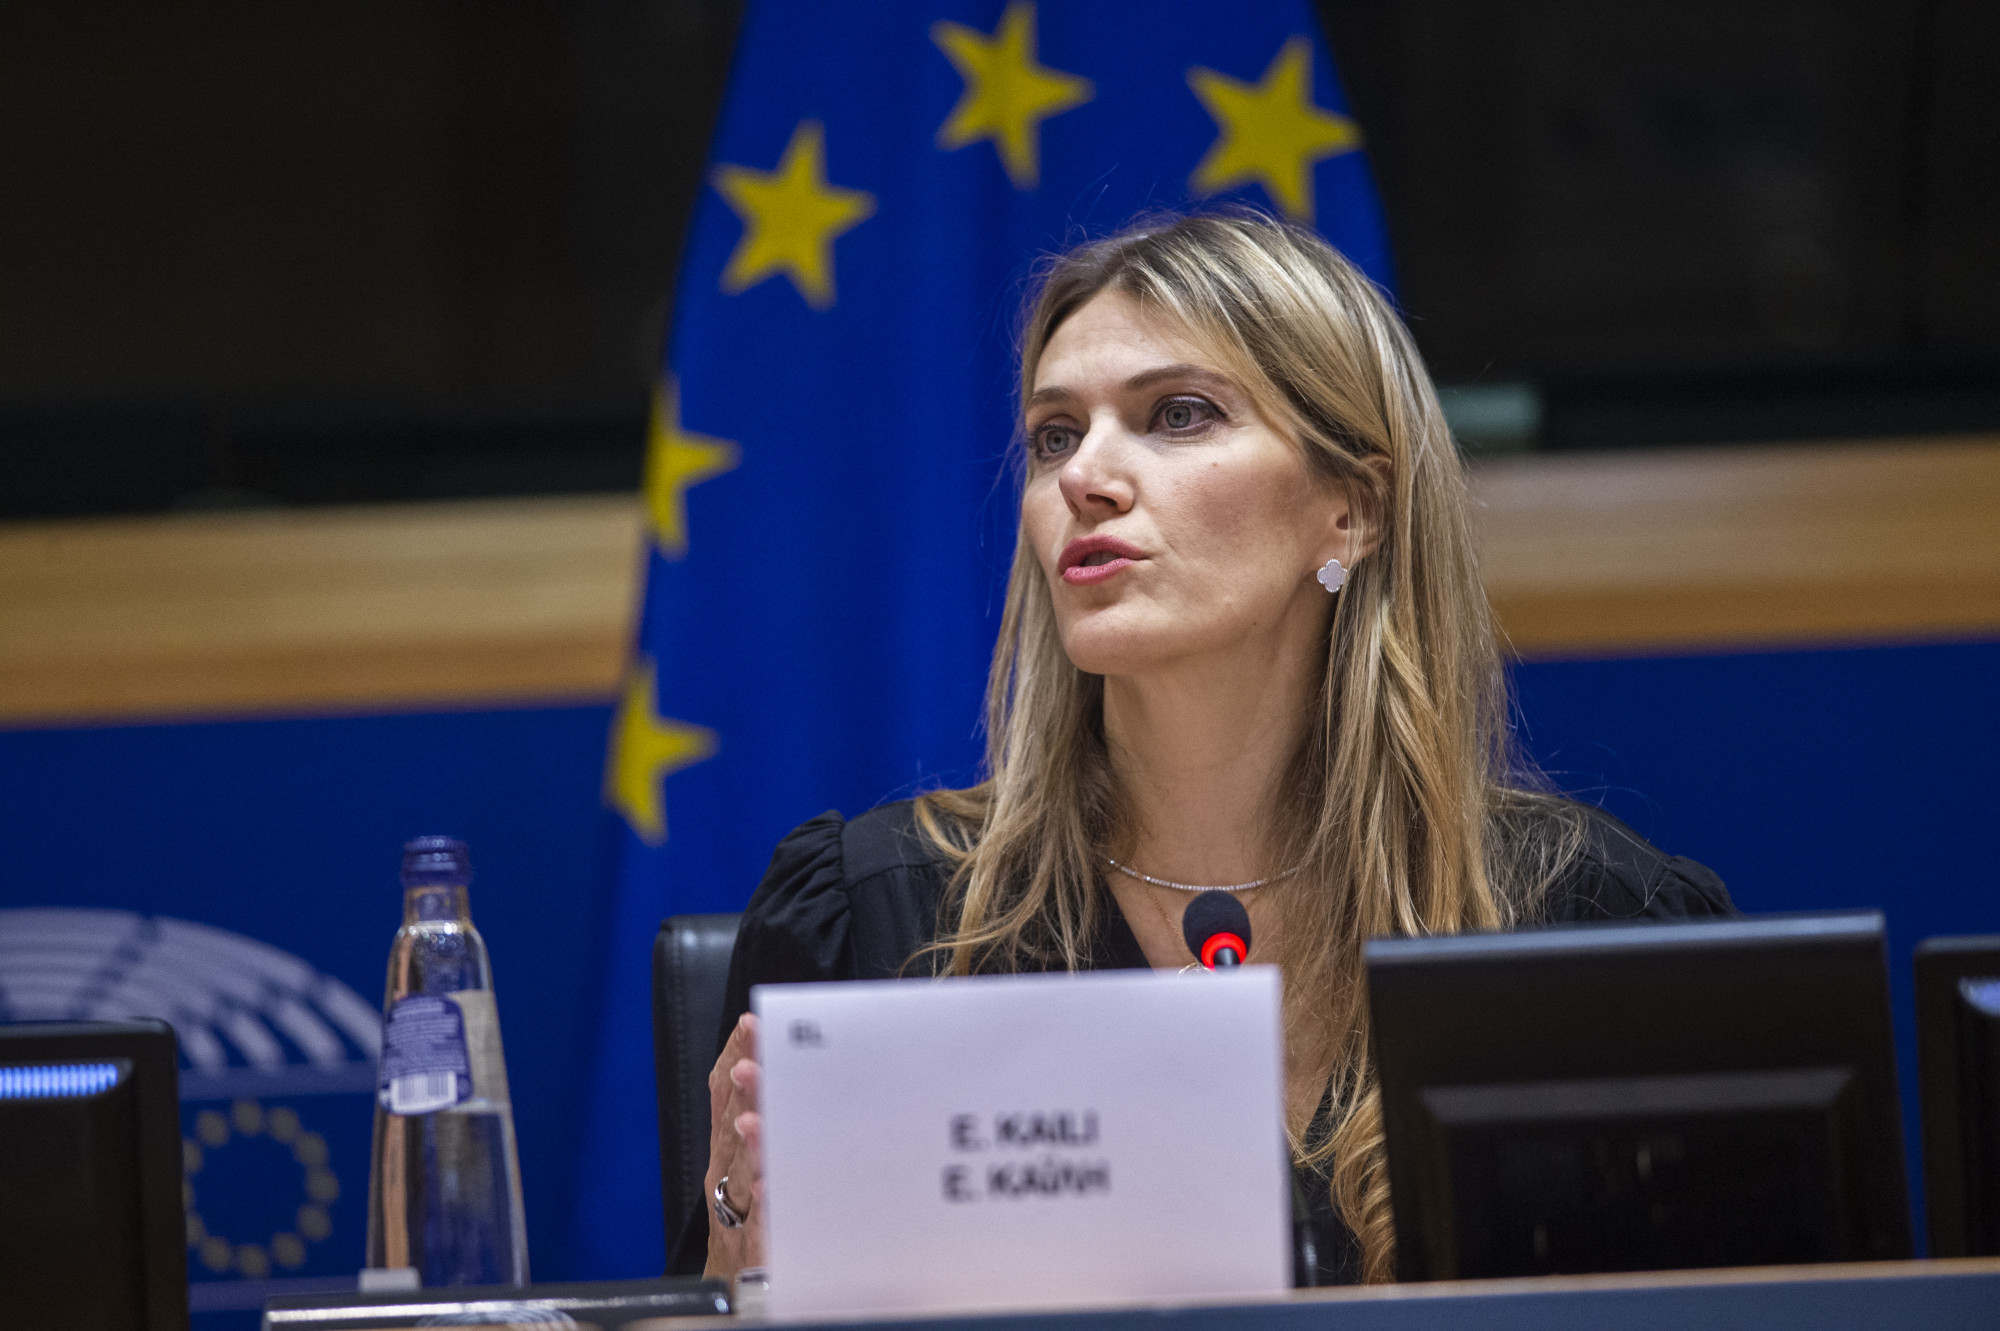 Az EP megfosztja mentelmi jogától a költségvetési csalással megvádolt Eva Kailit